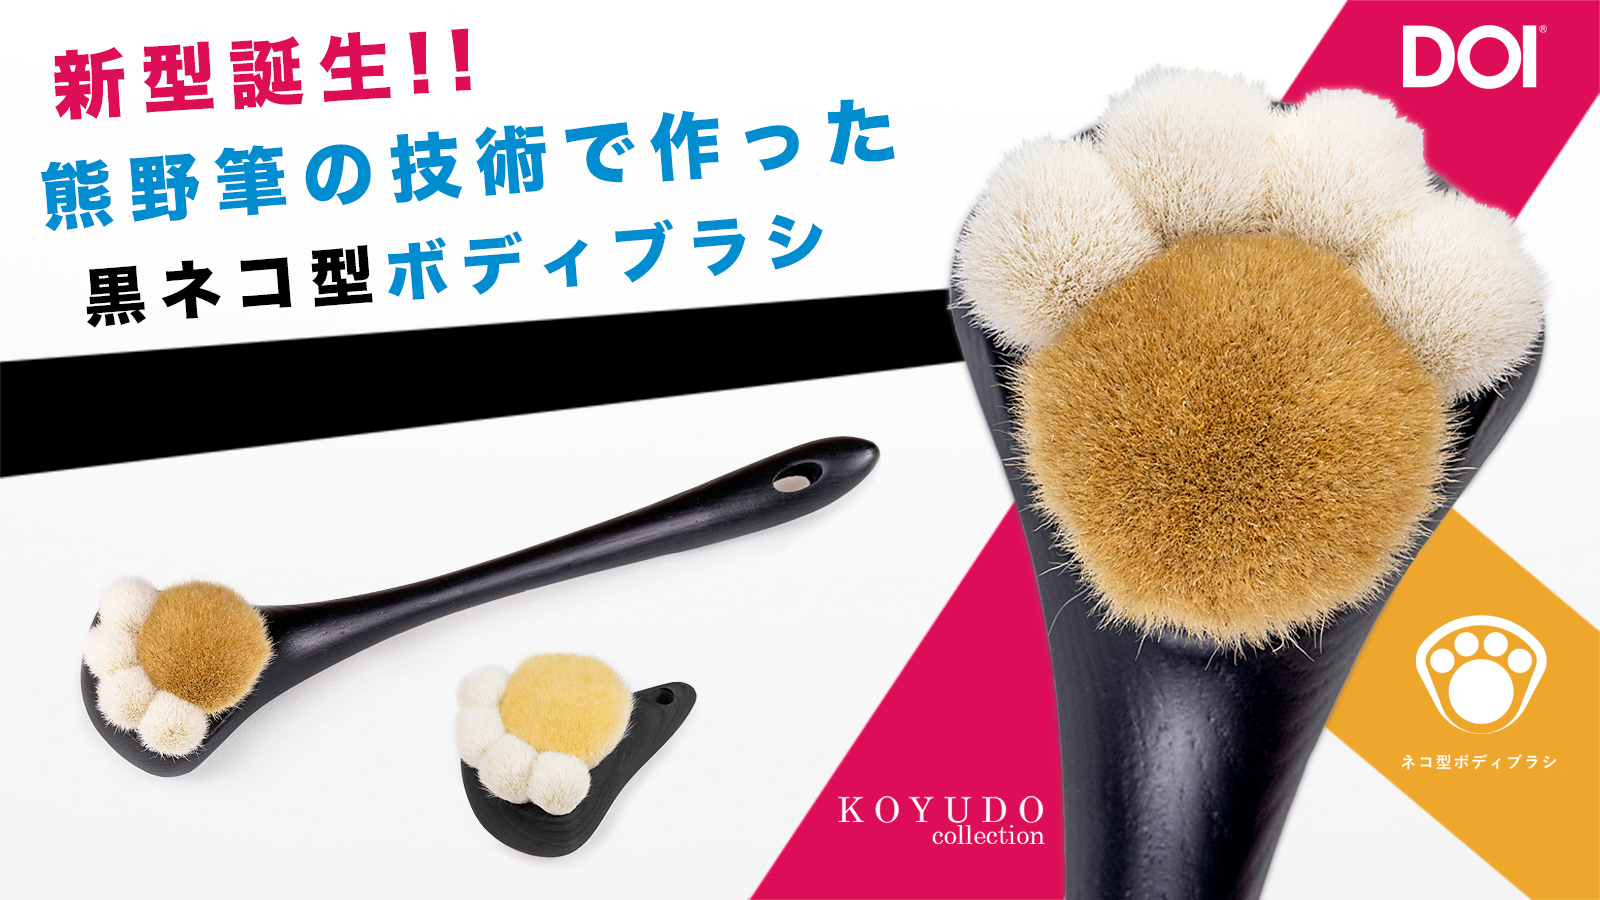 熊野筆で作った黒ネコ型ボディブラシでスキンケア。「Makuake(マクアケ)」にて8月7日(月)より先行販売。